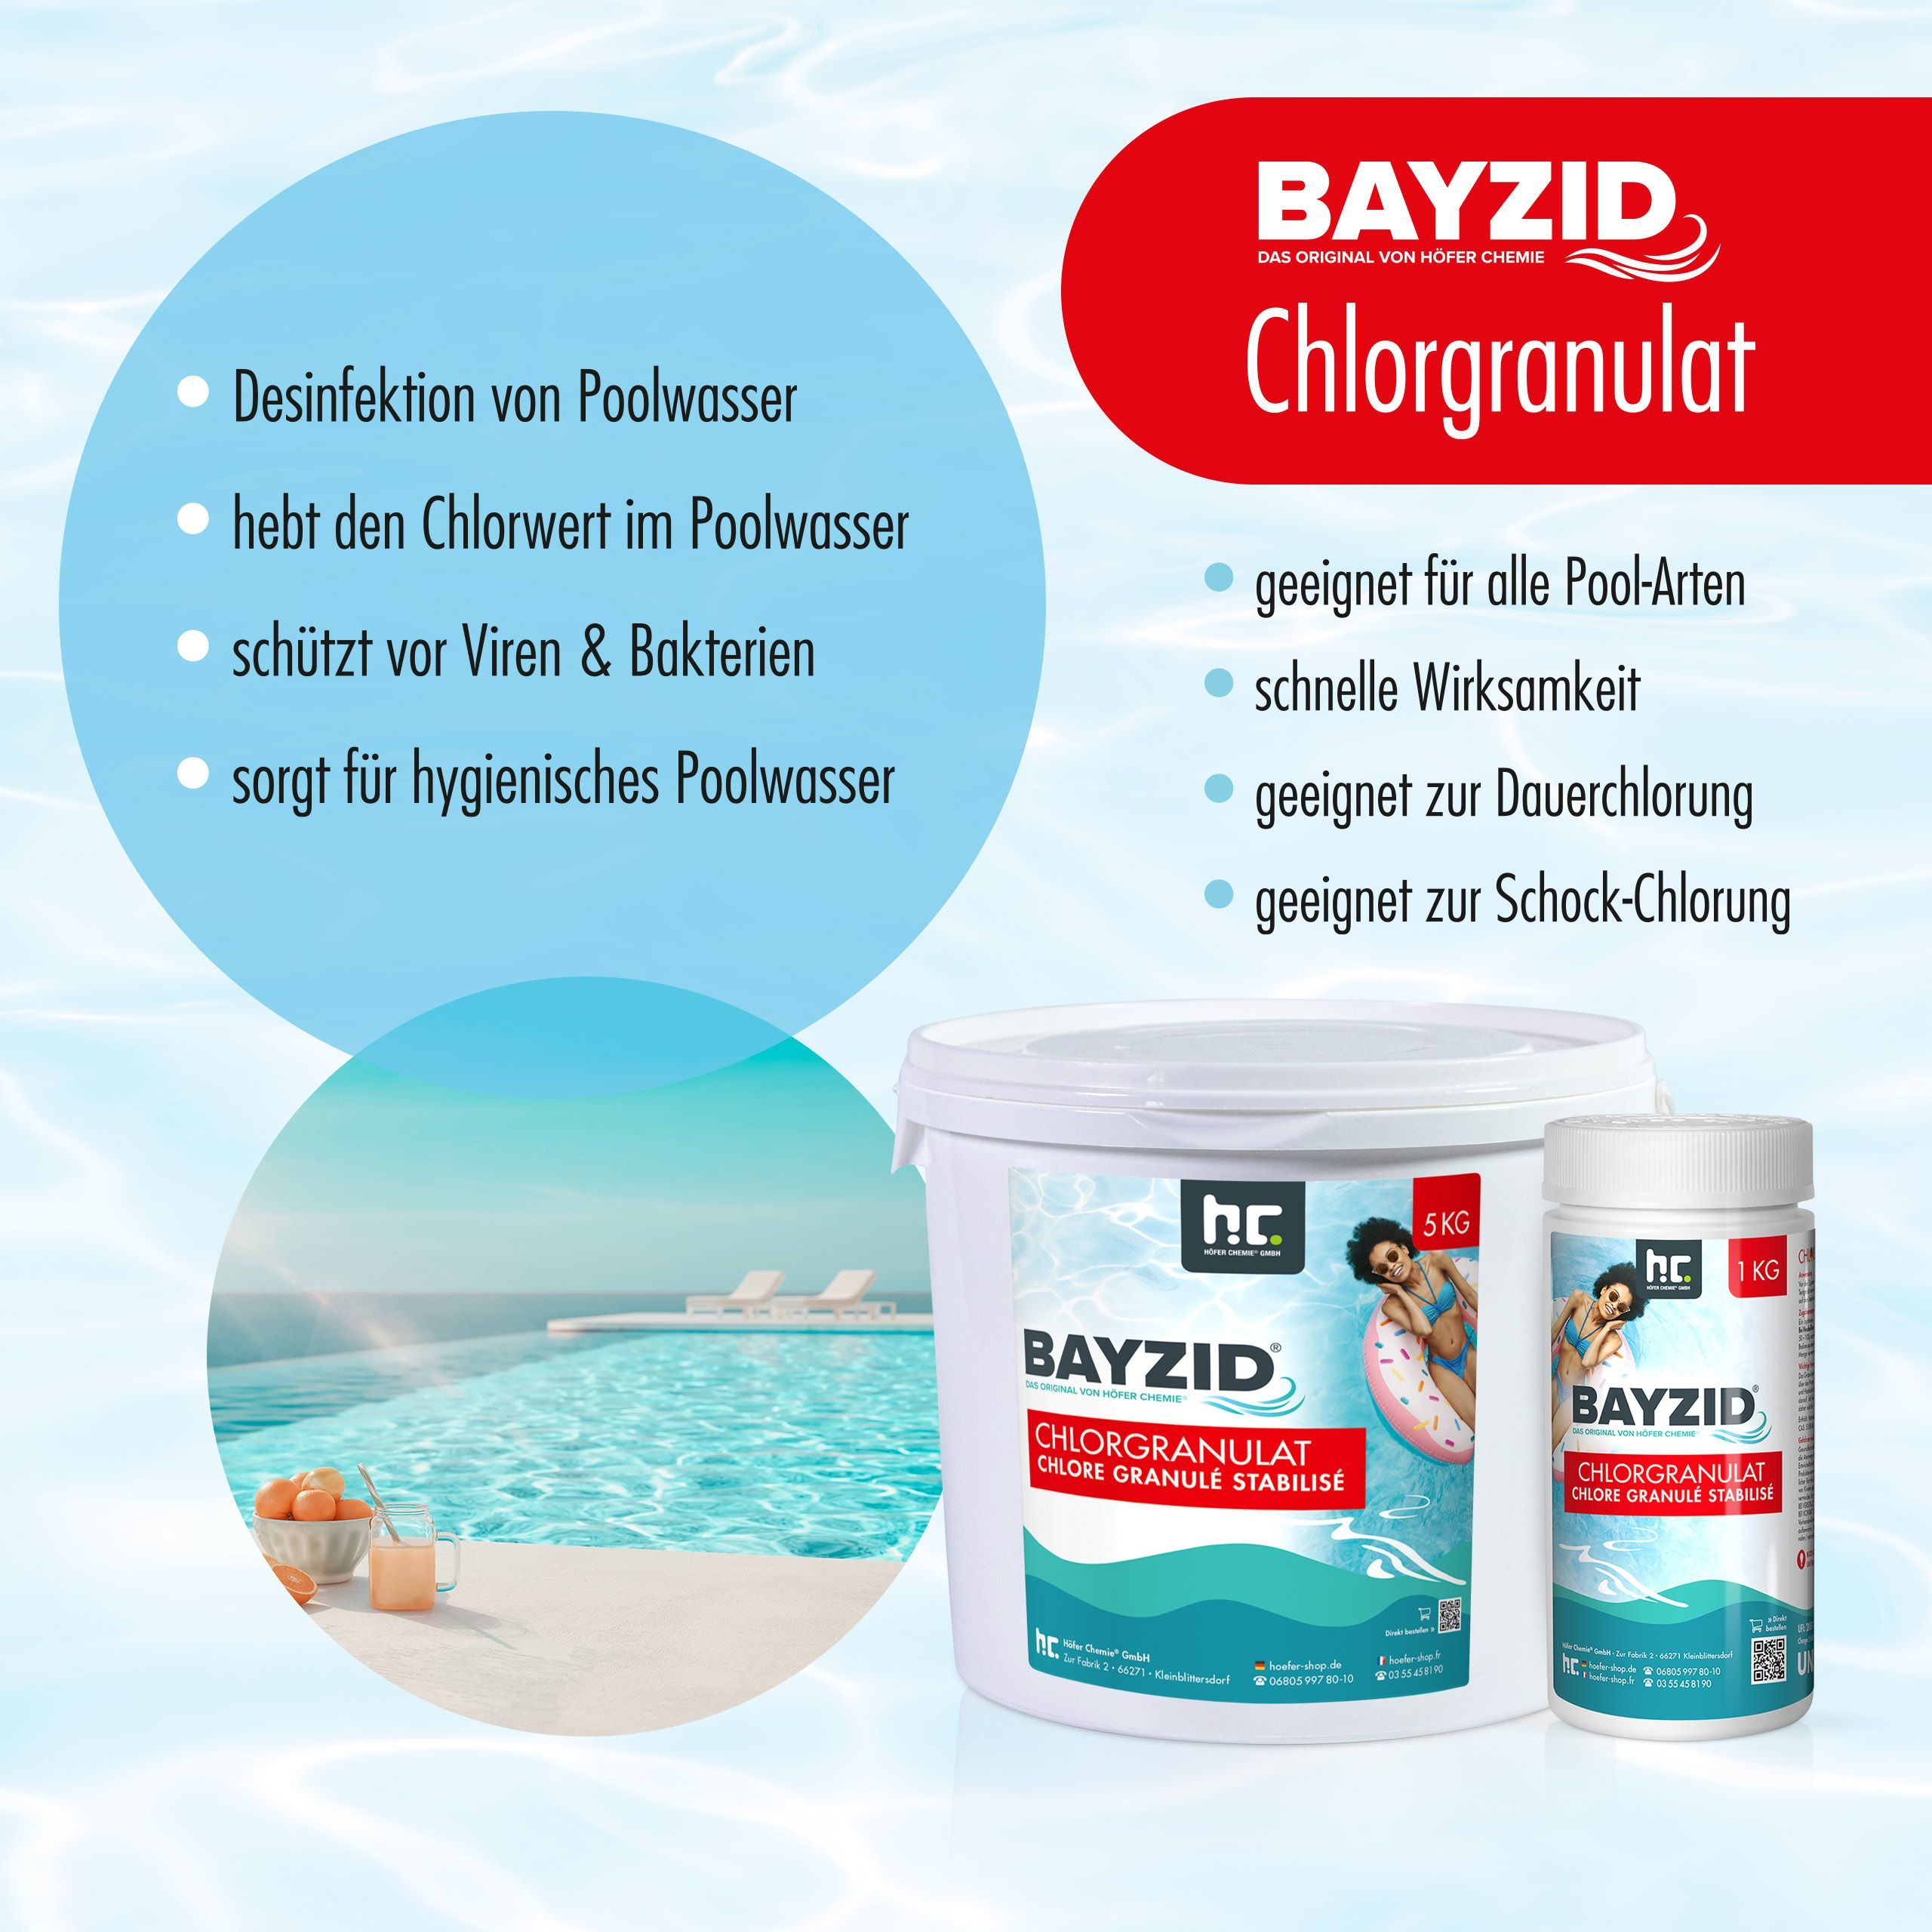 1 kg BAYZID® Granulés de chlore pour piscines